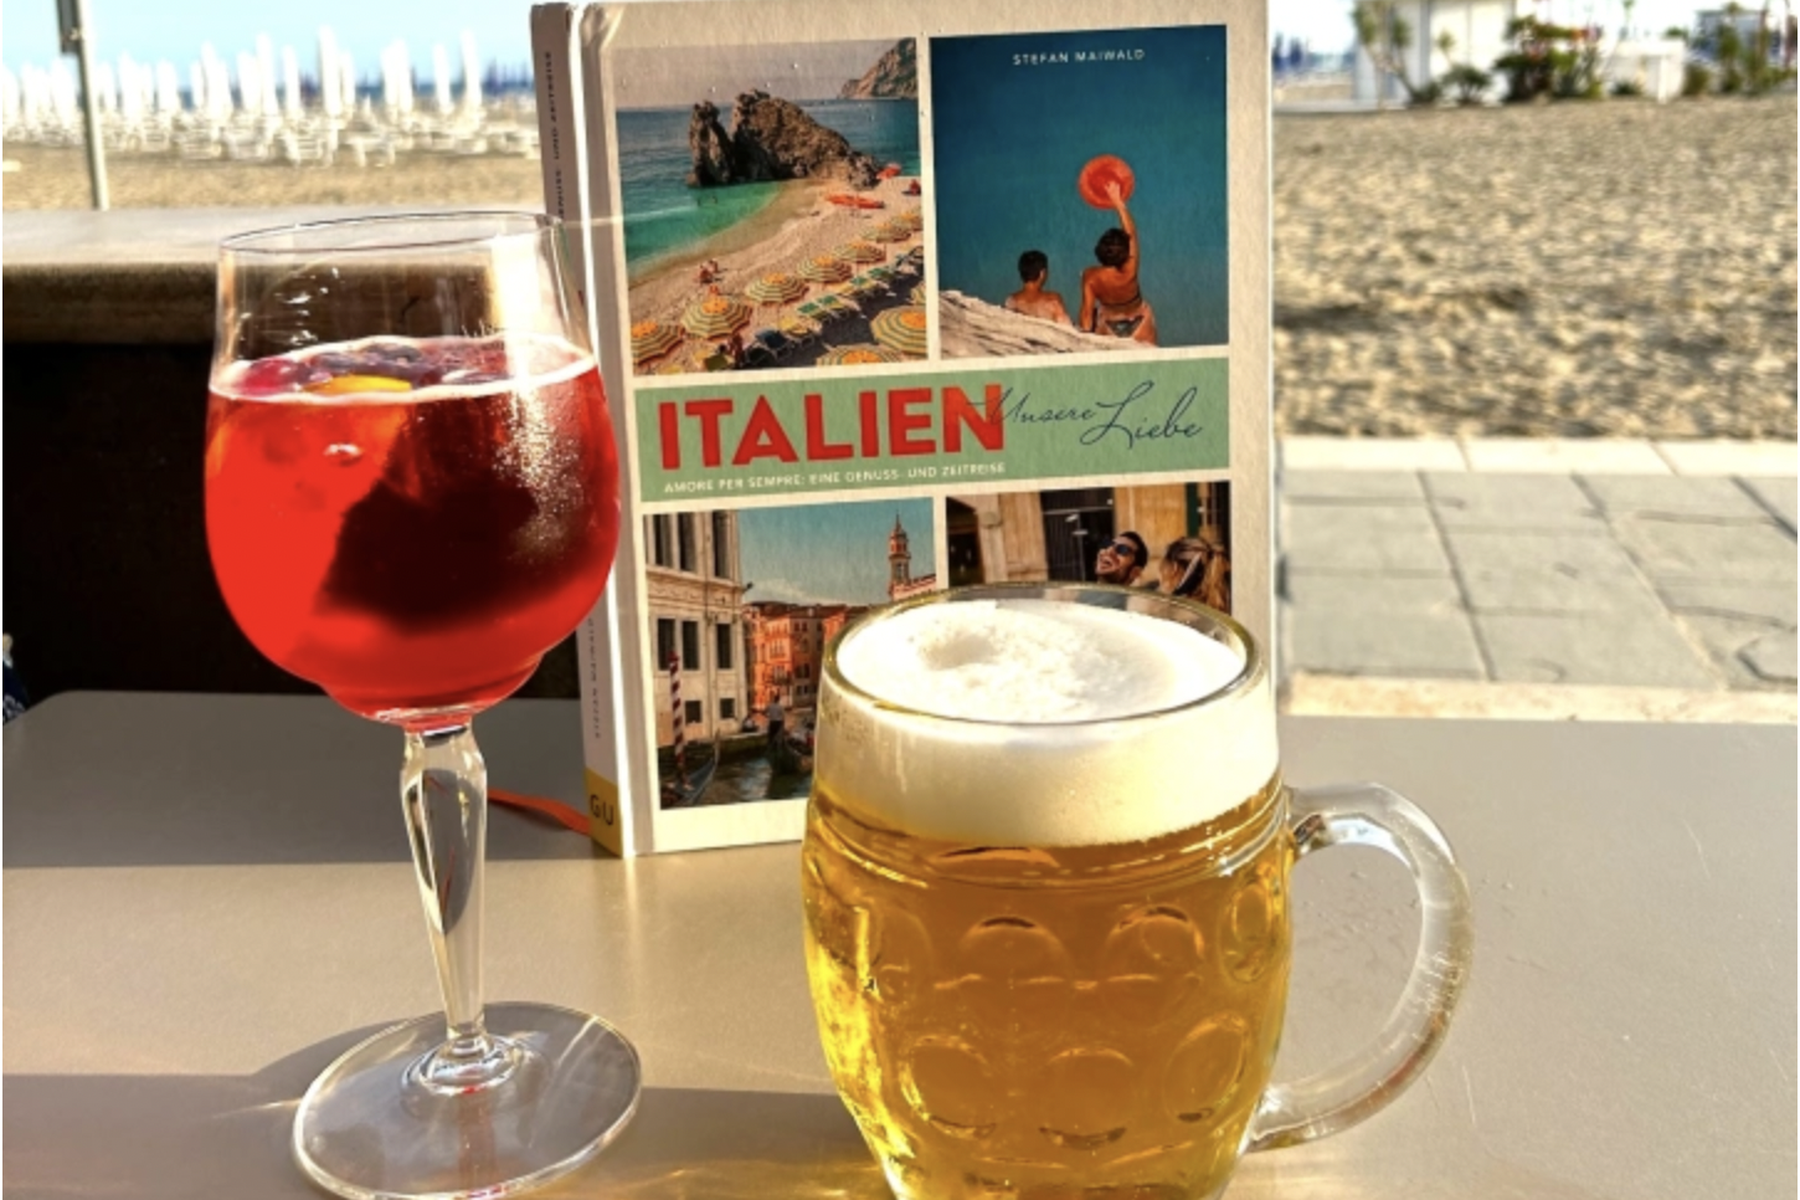 Neues Buch: Bestseller-Autor lädt zum Italien-Urlaub wie damals